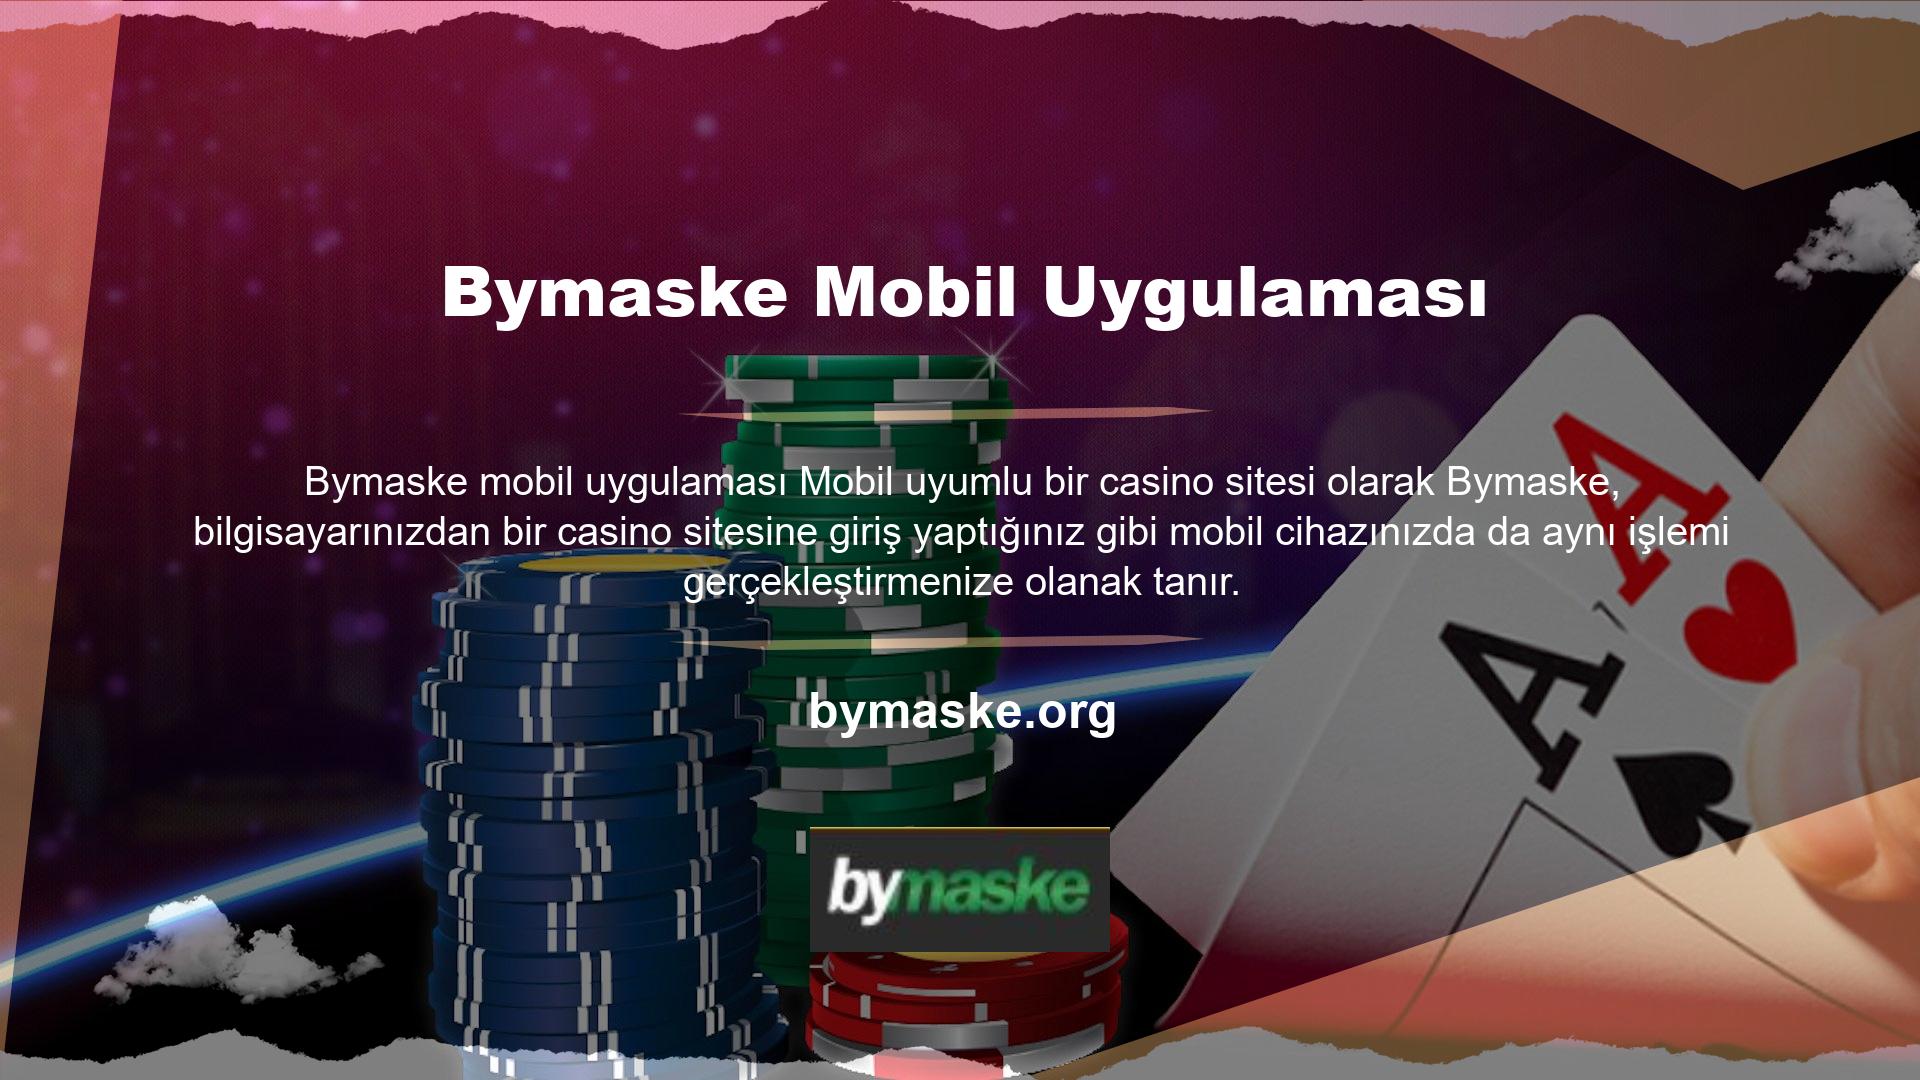 Bymaske, mobil cihazlarla tam uyumlu Bymaske mobil uygulaması için özel olarak tasarlanmış bir web sitesi geliştirerek, bilgisayarınızdaki tüm işlemlerinizi mobil cihazınız üzerinden gerçekleştirmenizi sağlar